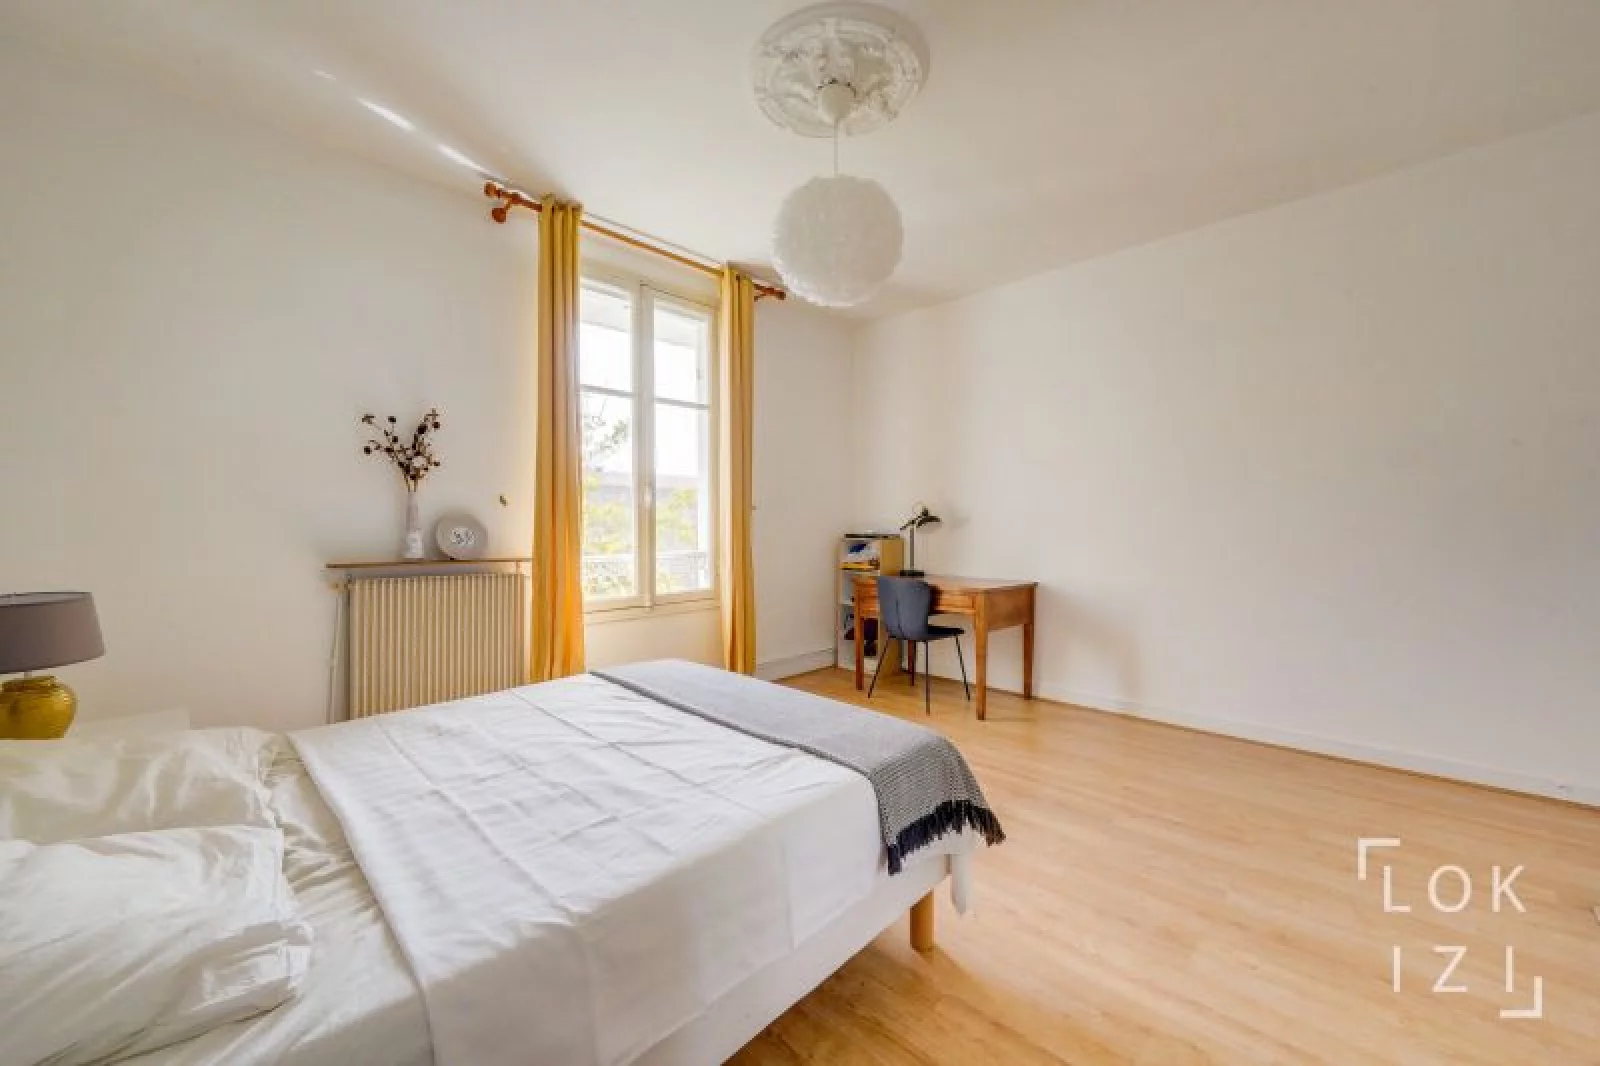 Location appartement meublé 3 pièces 83m²  (Bordeaux - Chartrons)